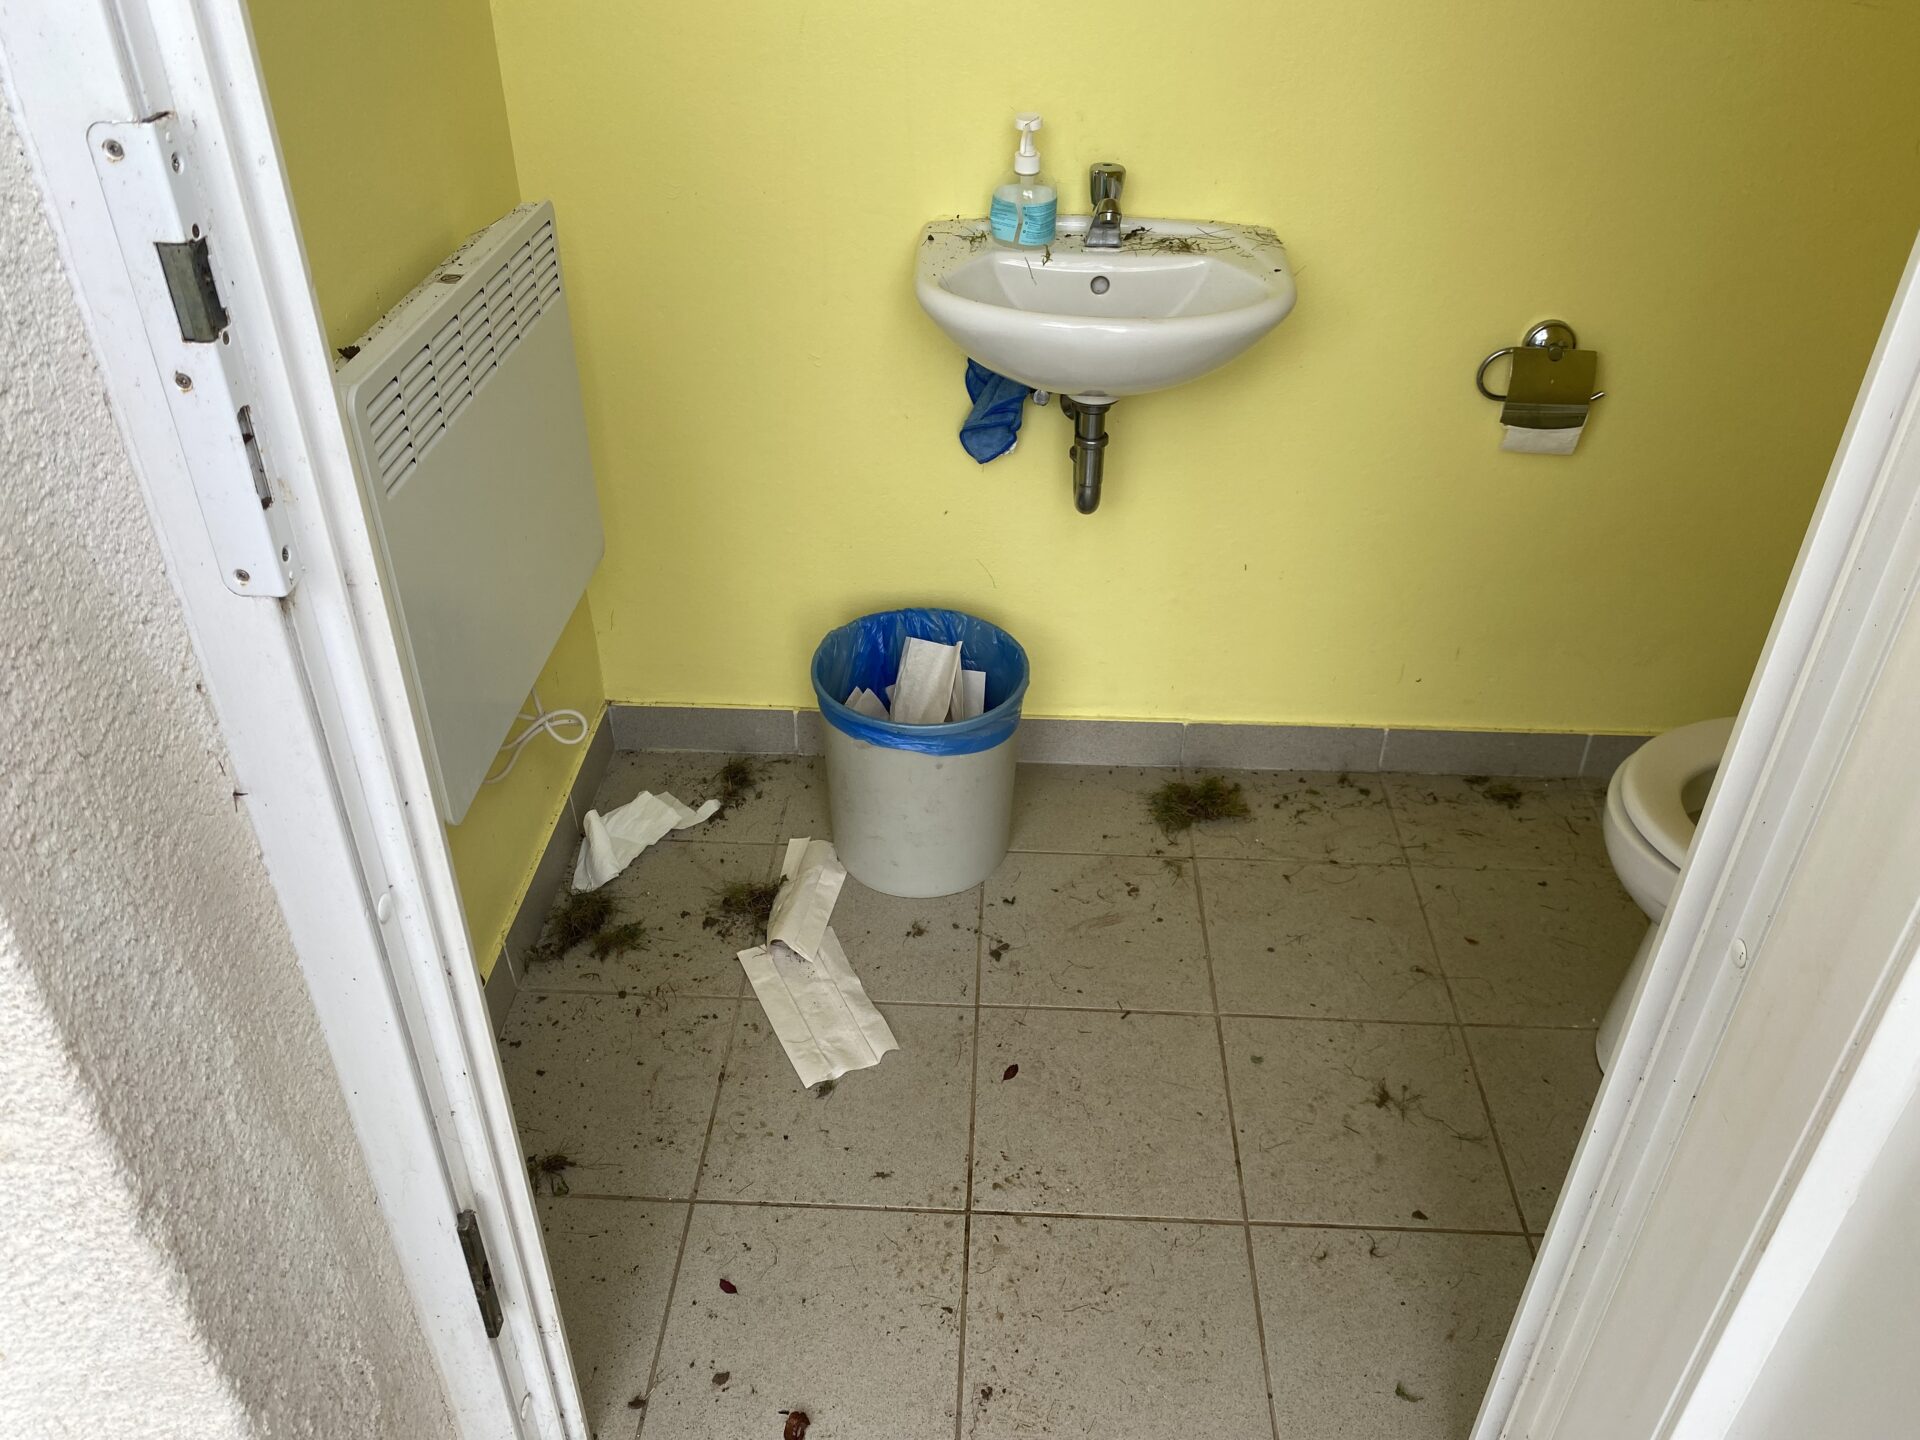 Vandalisme Toilette publique